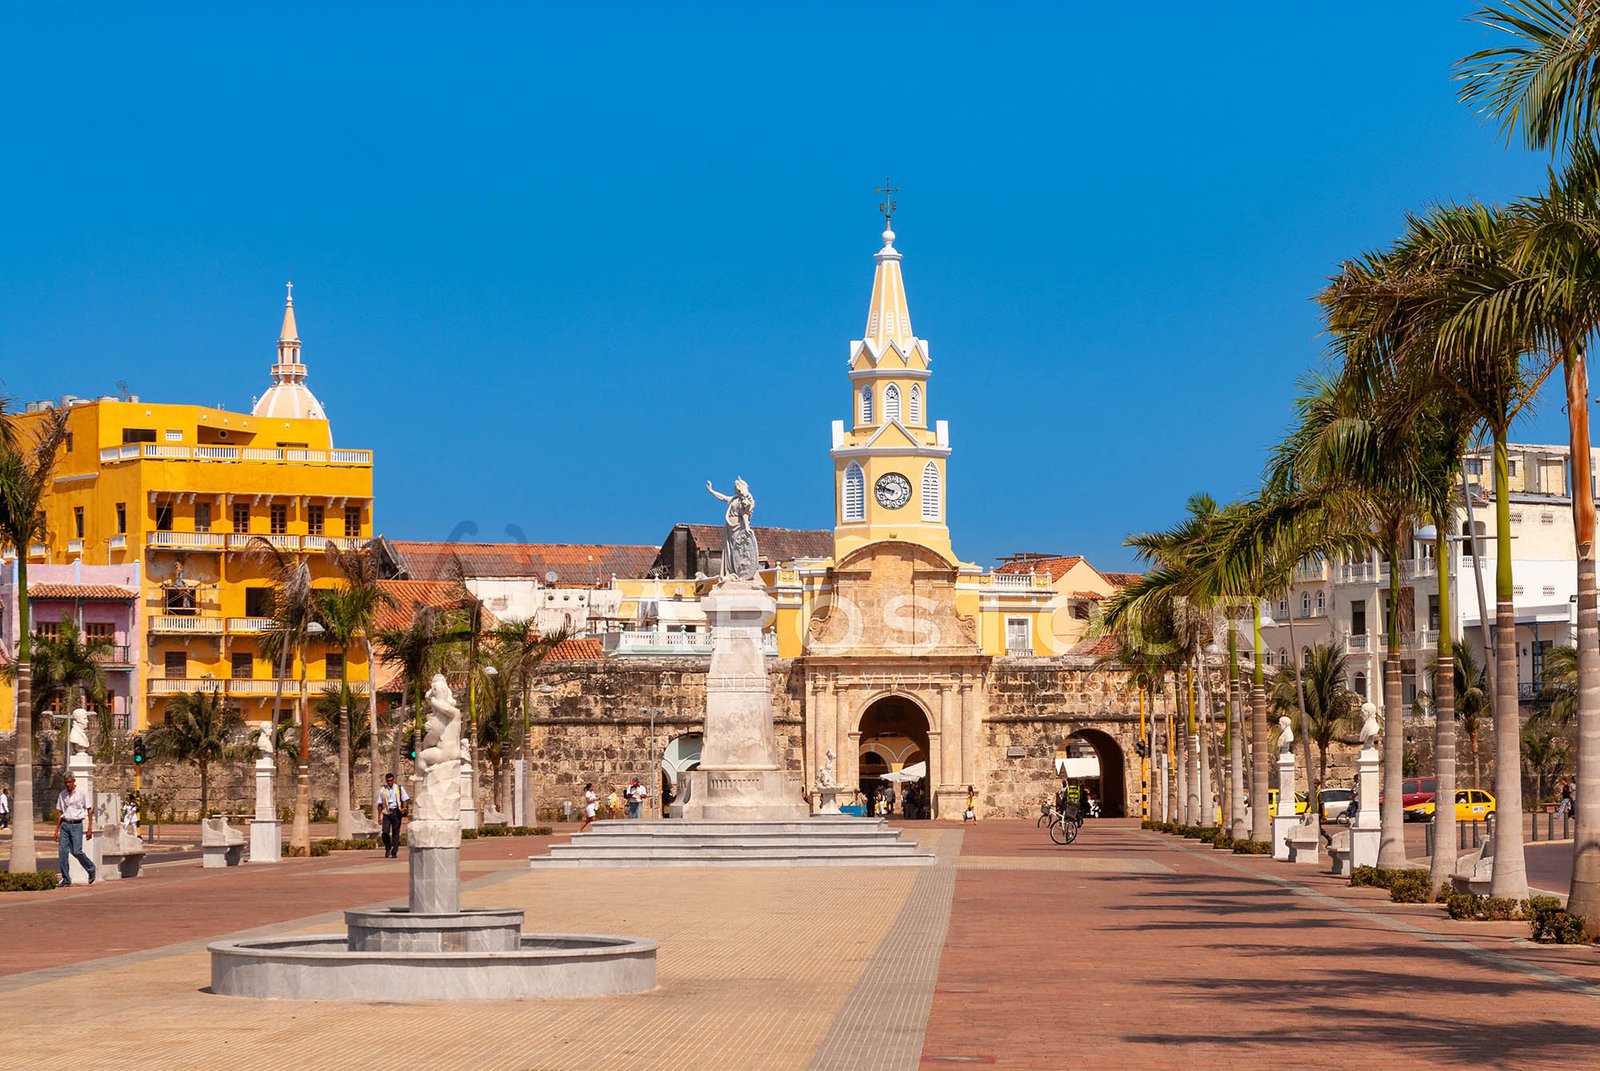 Avenue leading to the Puerta del Reloj, Cartagena de Indias, Colombia